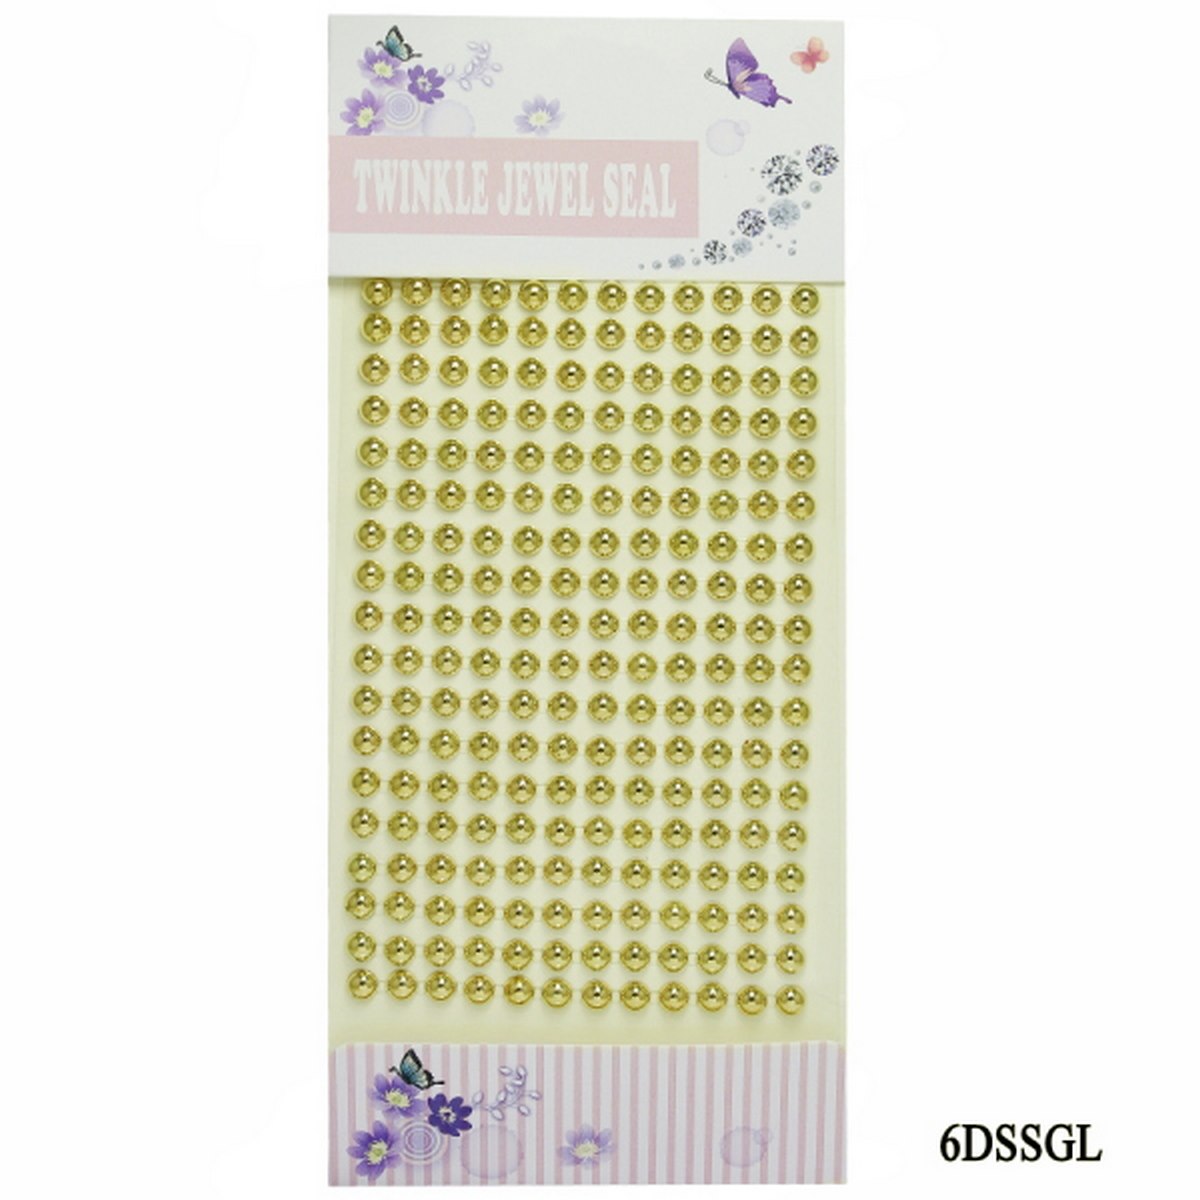 Sticker Pearl Gold  Twinkle Jewel Seal 6DSSGL